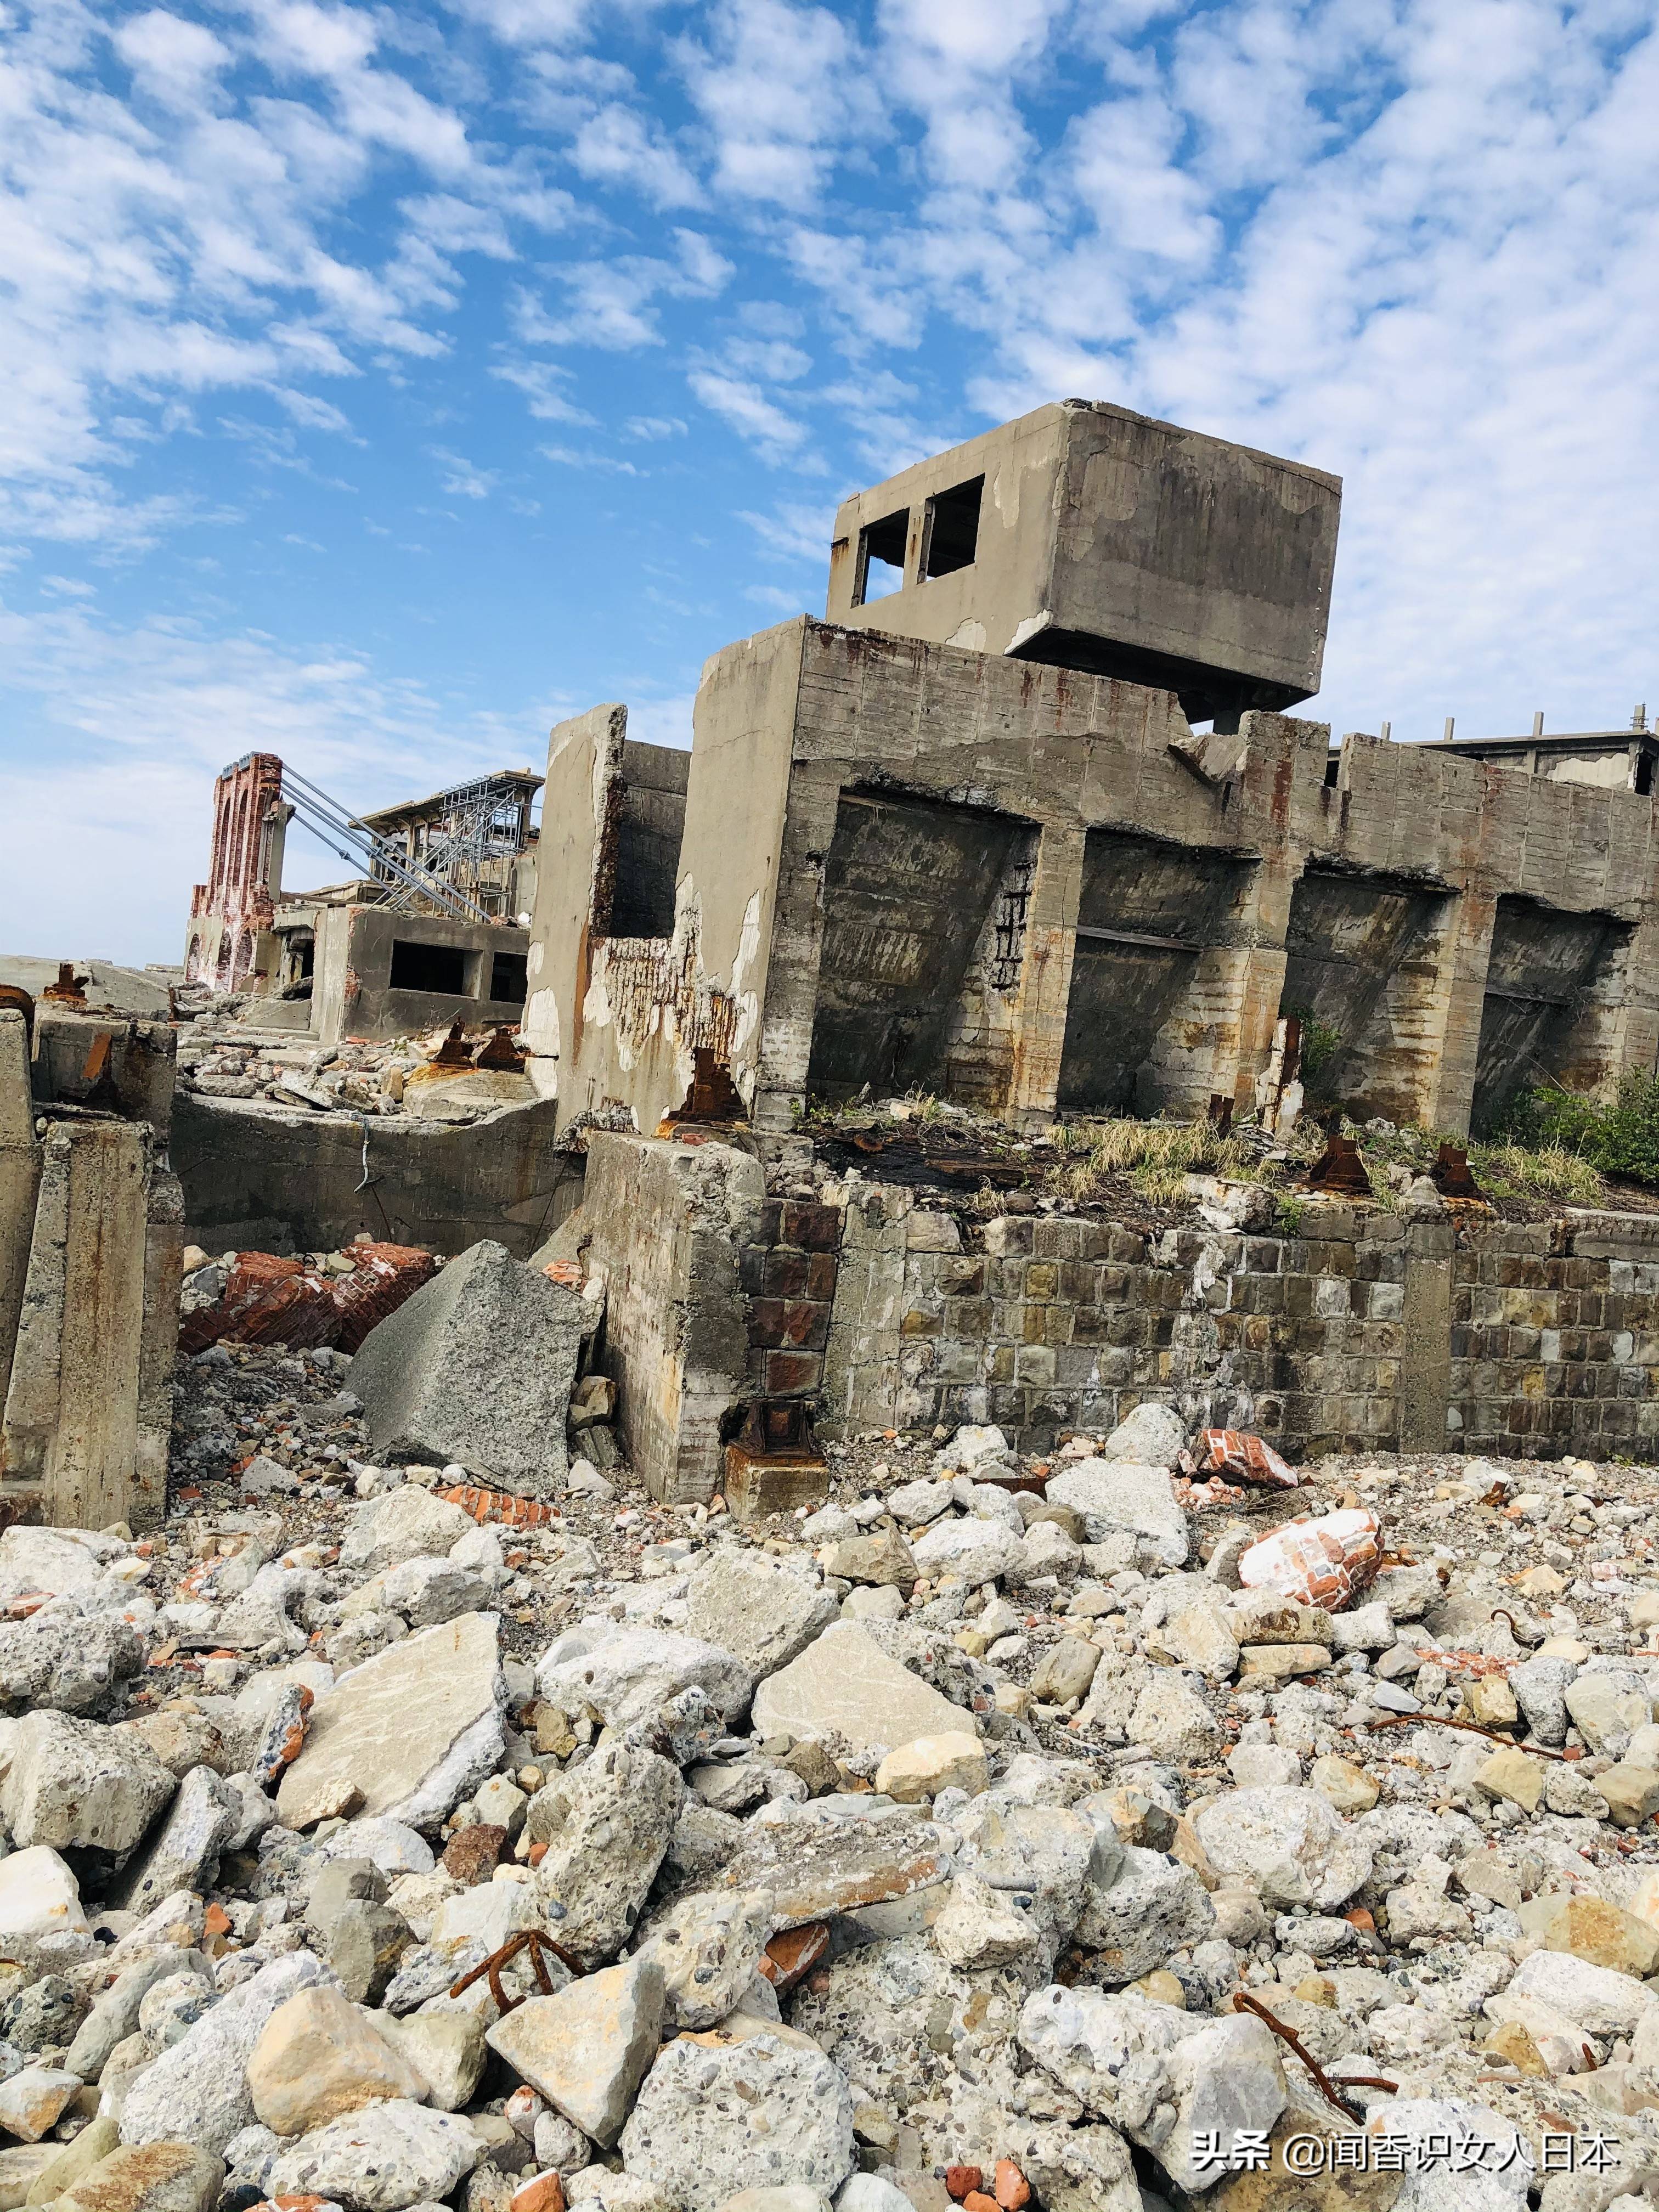 日本军舰岛,一座废弃的无人岛,现在是热门观光地,岛上废墟遍地